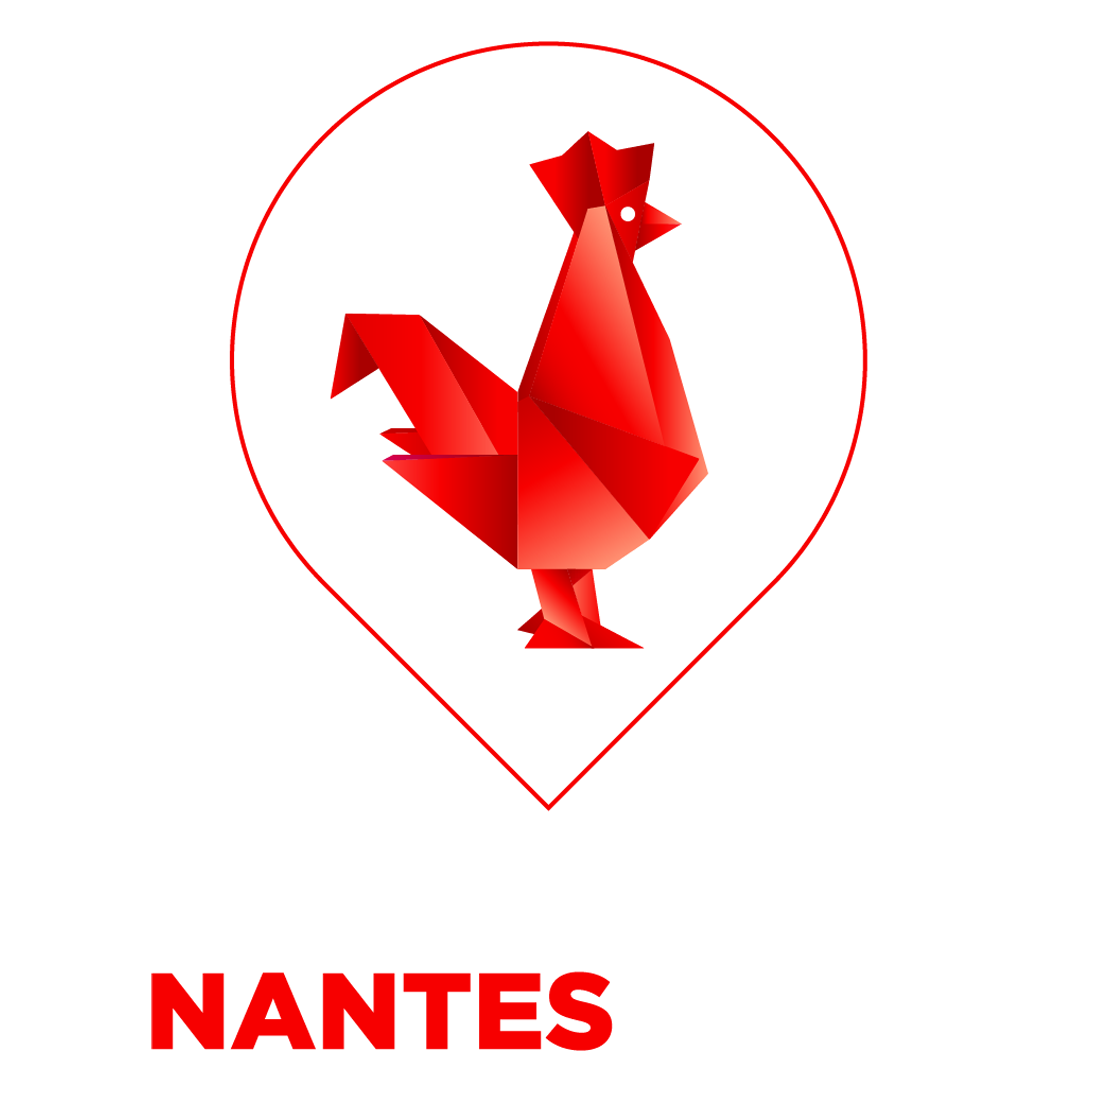 La French Tech Nantes